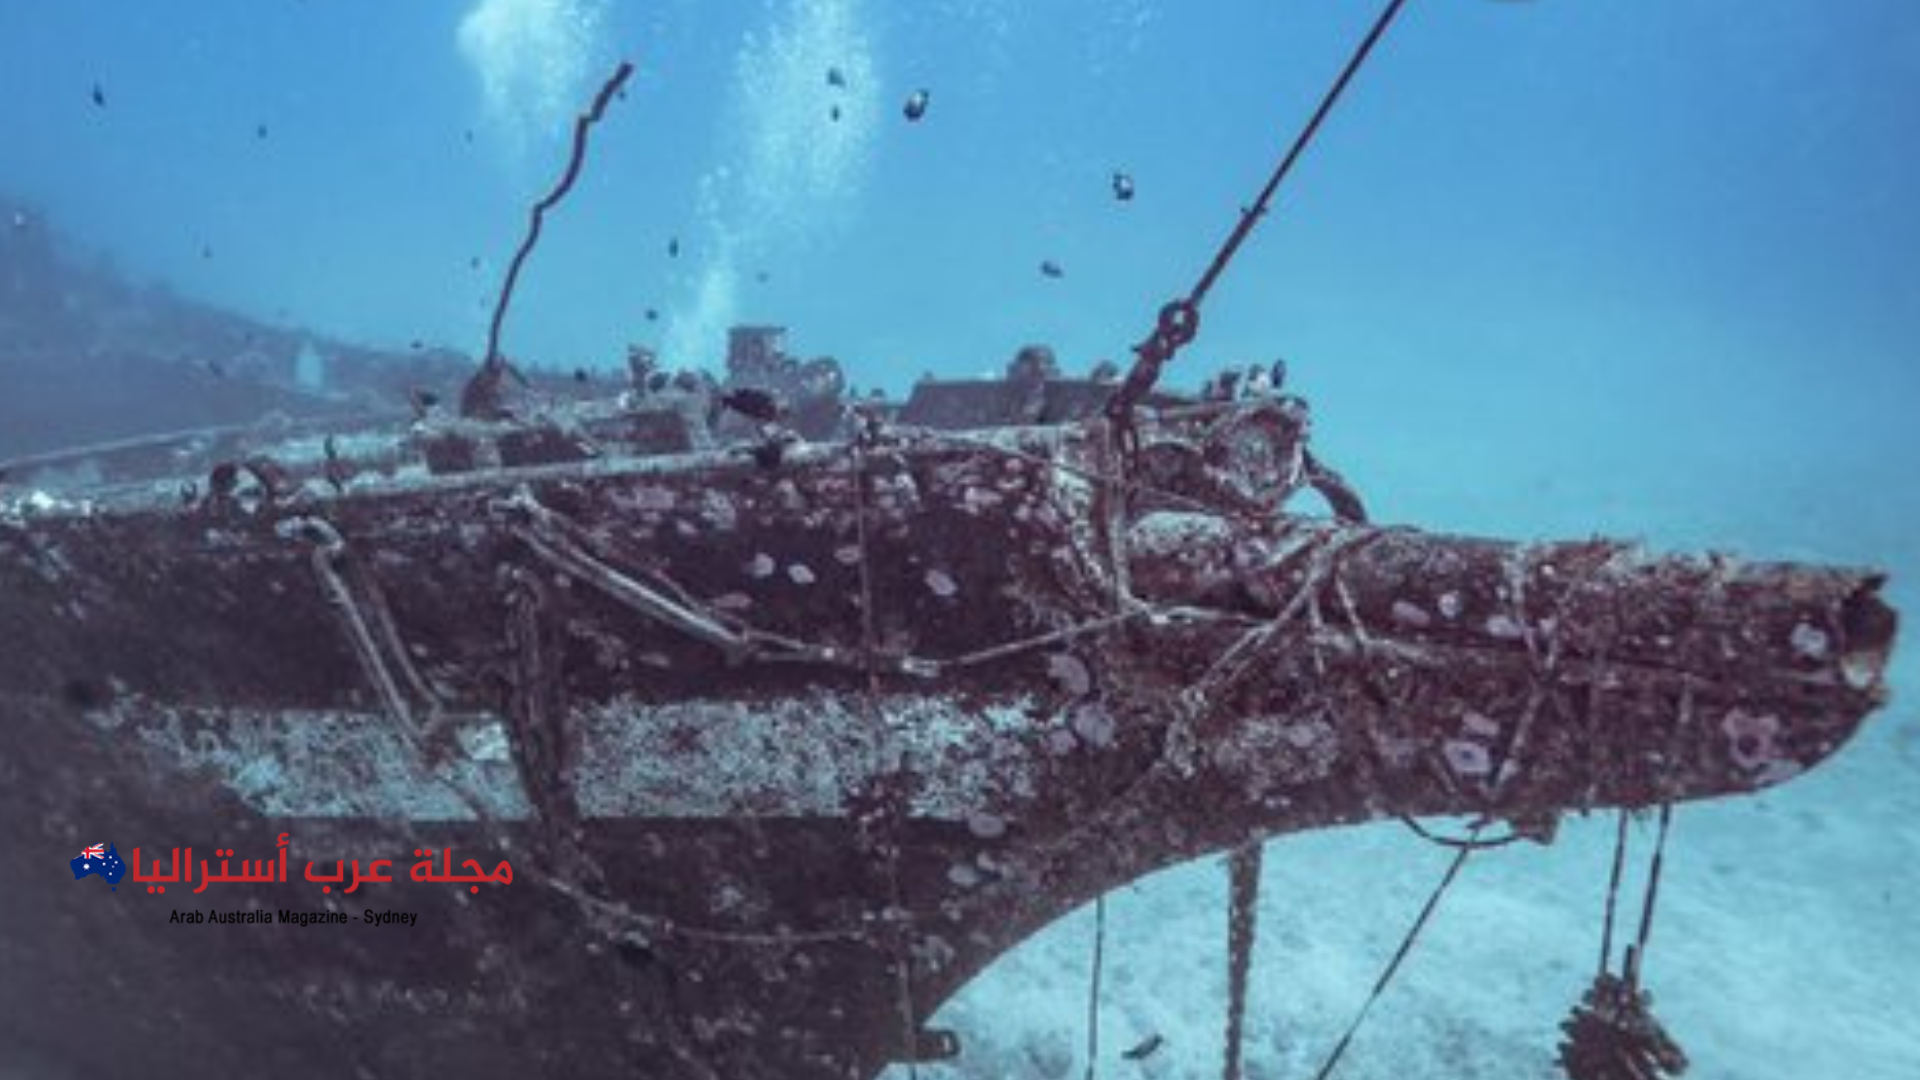 باحثون أستراليون يحددون موقع حطام السفينة “إم في بليث ستار” بعد 50 عاما من غرقها